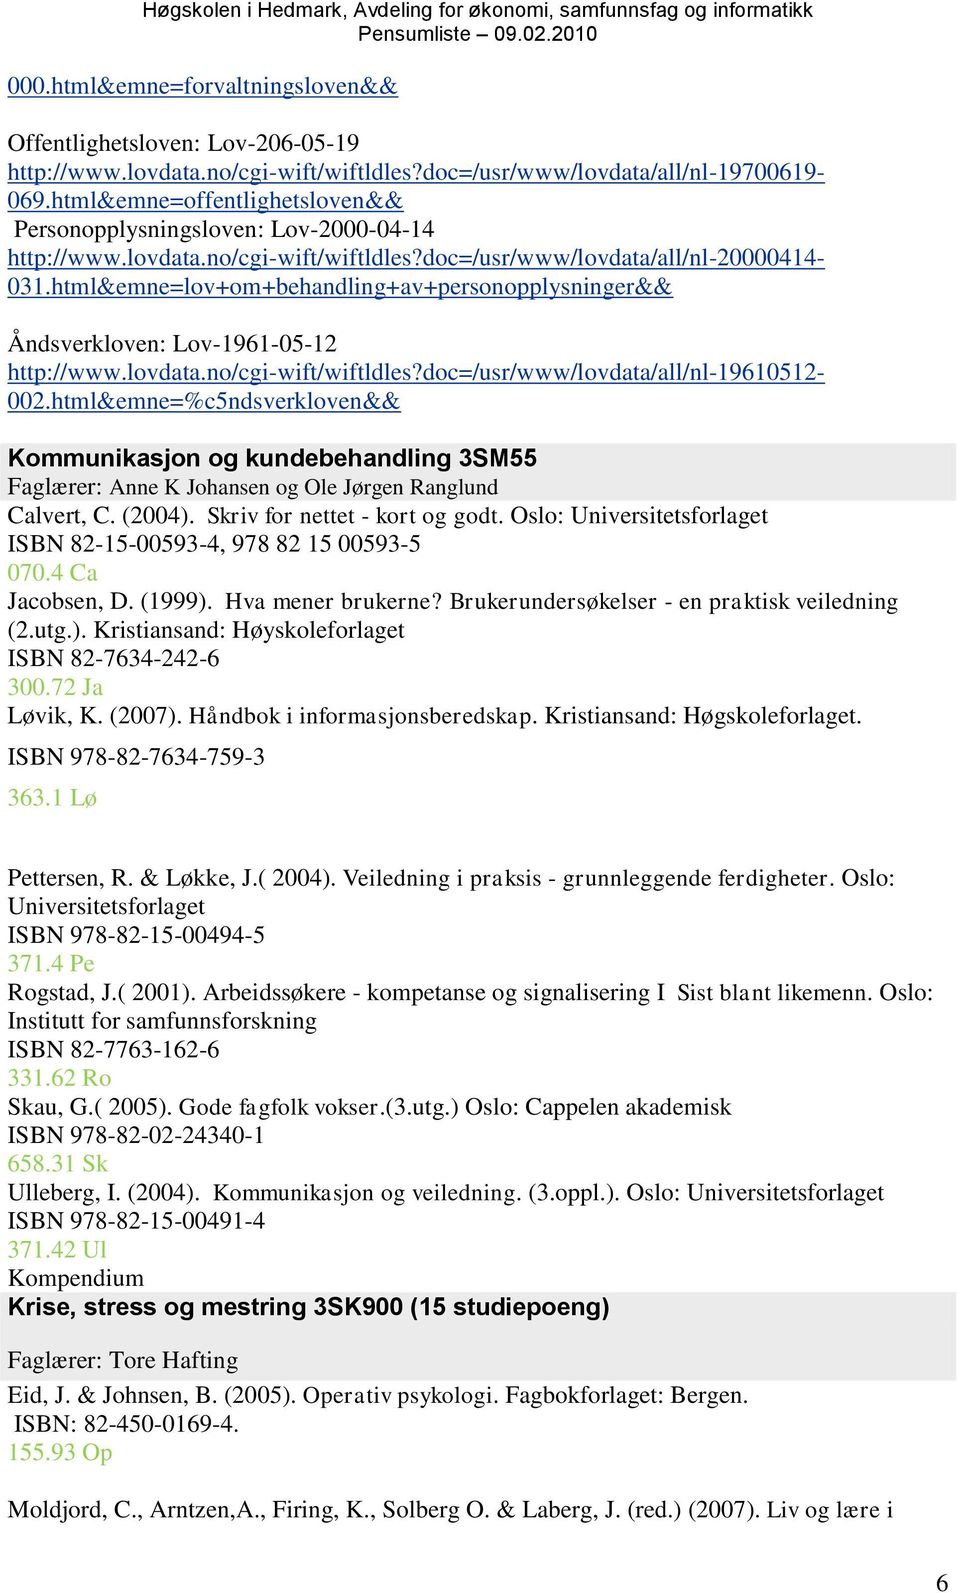 html&emne=lov+om+behandling+av+personopplysninger&& Åndsverkloven: Lov-1961-05-12 http://www.lovdata.no/cgi-wift/wiftldles?doc=/usr/www/lovdata/all/nl-19610512-002.